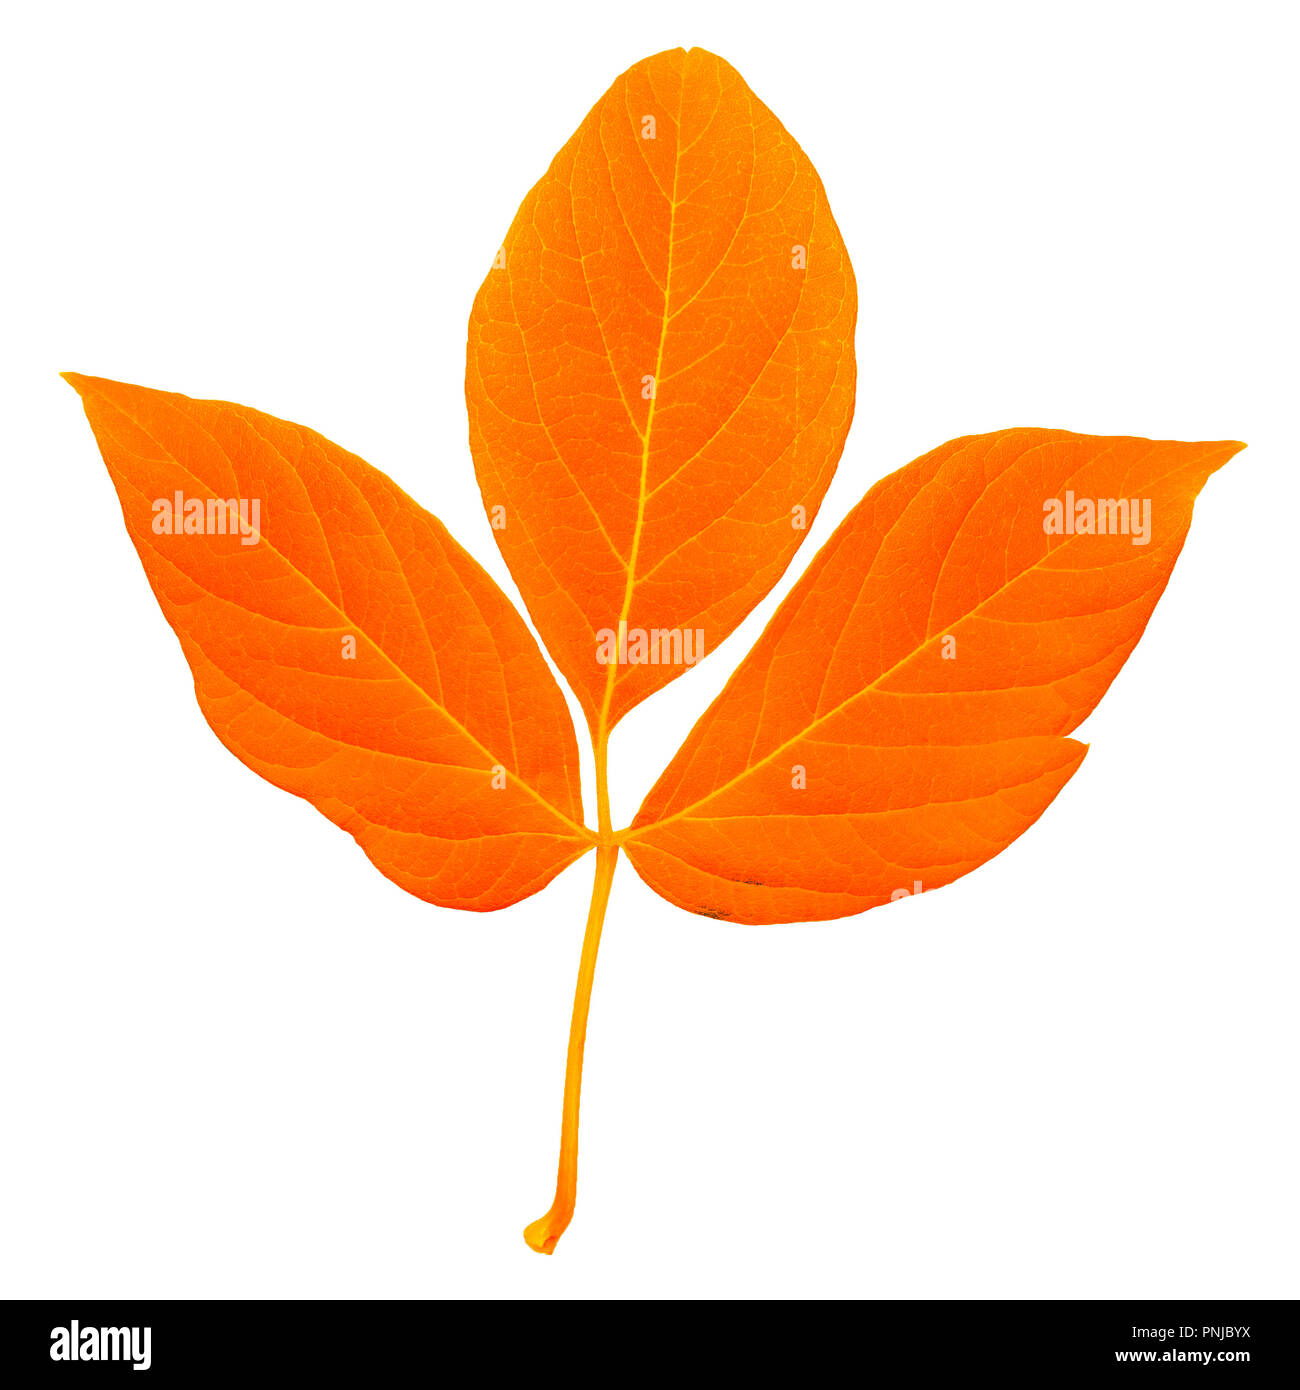 Les feuilles fraîches de couleur orange avec tige, feuilles pennées avec beaucoup de rayures isolé sur fond blanc Banque D'Images